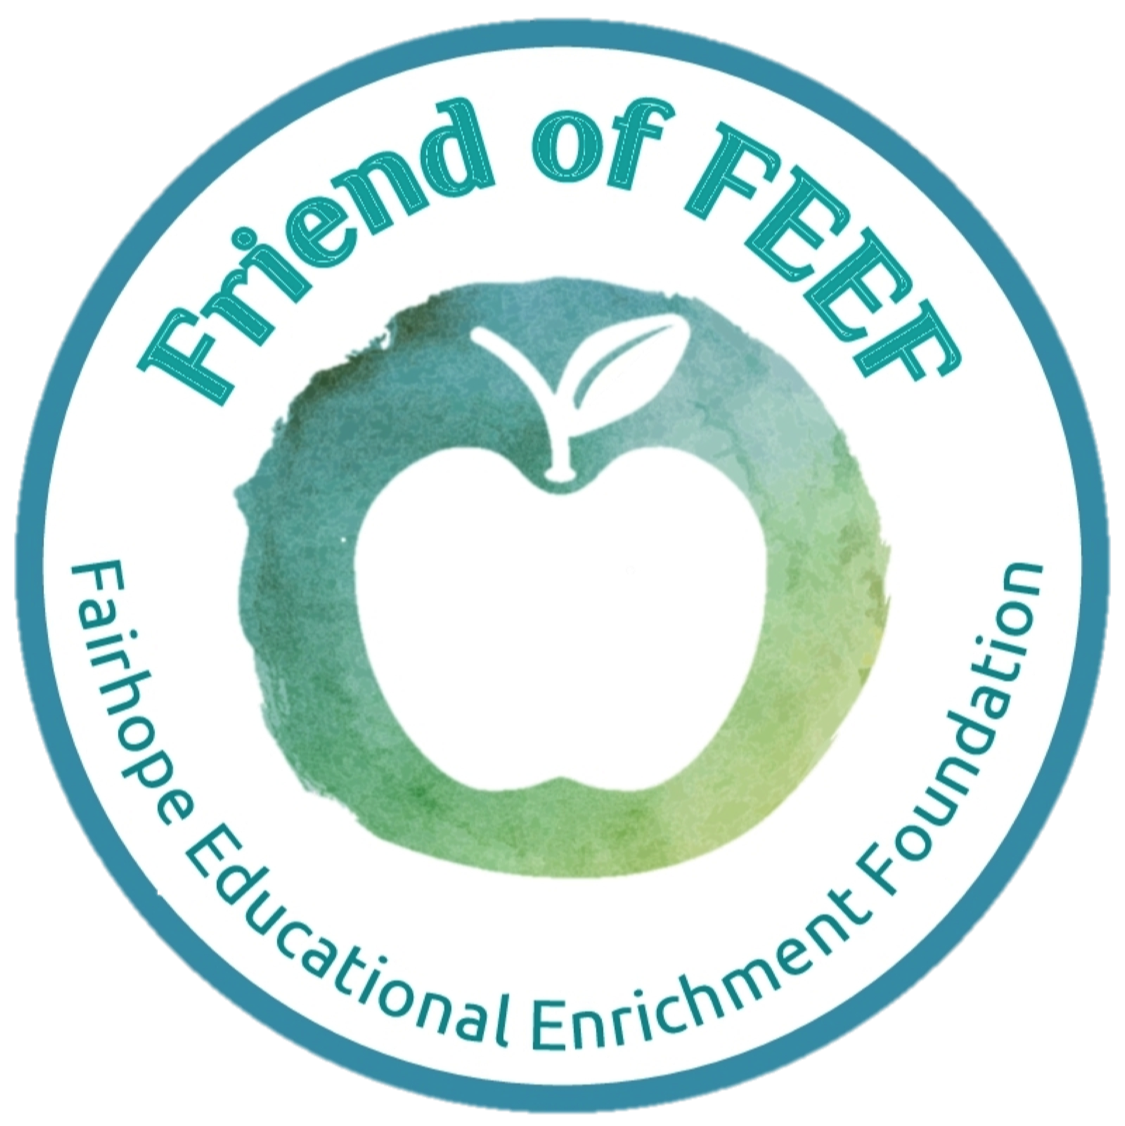 Events Calendar Fairhope Educational Enrichment Foundation